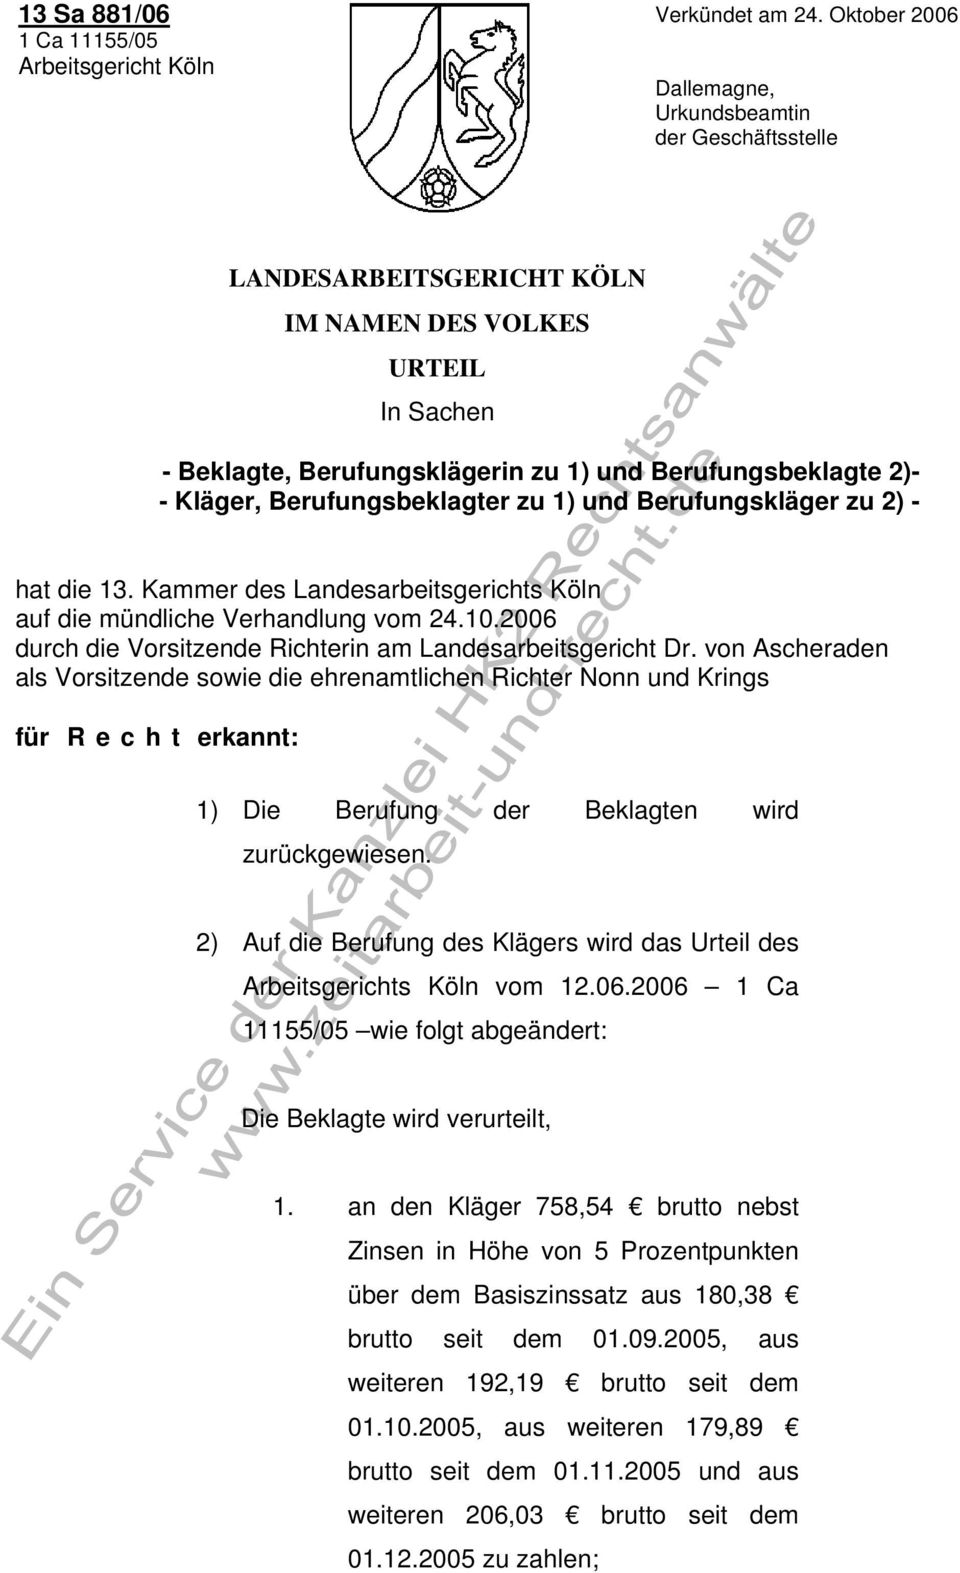 Berufungsbeklagter zu 1) und Berufungskläger zu 2) - hat die 13. Kammer des Landesarbeitsgerichts Köln auf die mündliche Verhandlung vom 24.10.